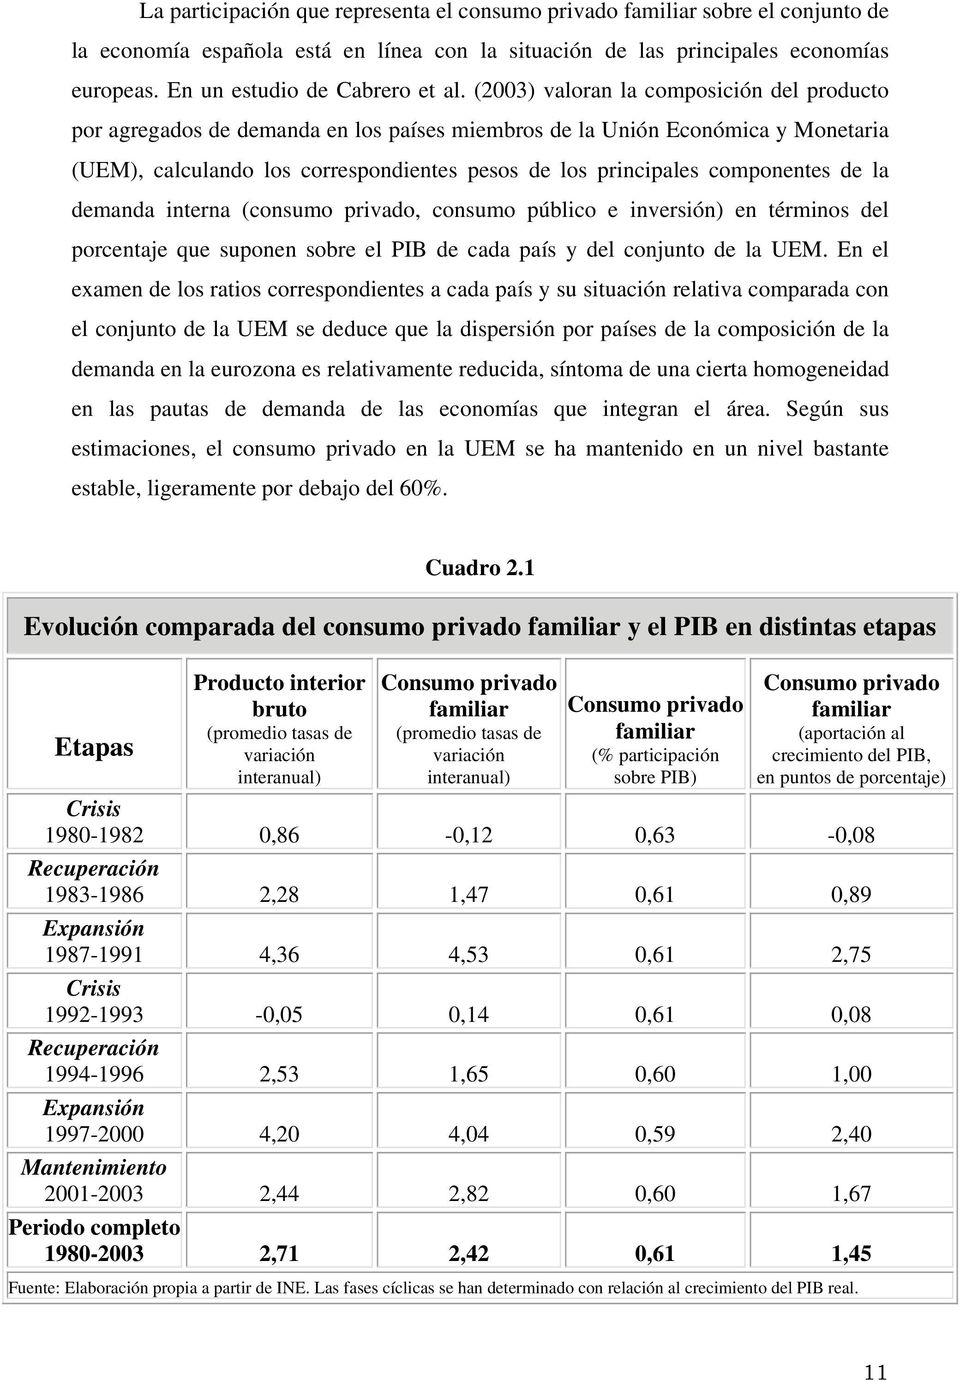 (2003) valoran la composición del producto por agregados de demanda en los países miembros de la Unión Económica y Monetaria (UEM), calculando los correspondientes pesos de los principales